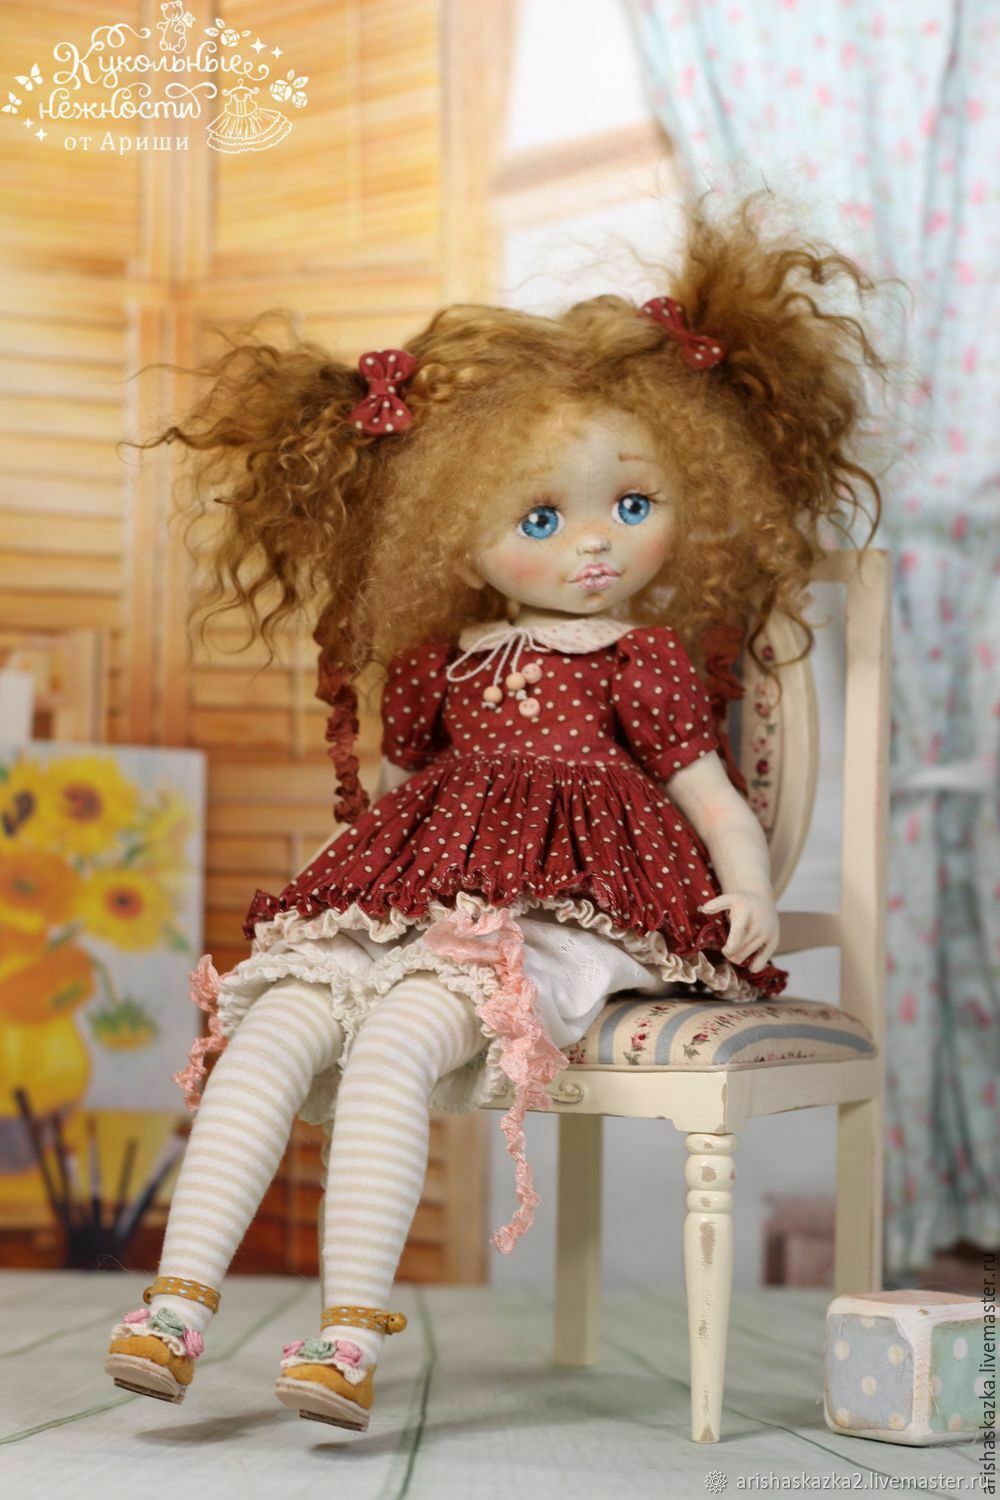 Ариша, набор для шитья куклы, высота 35см. Модное Хобби